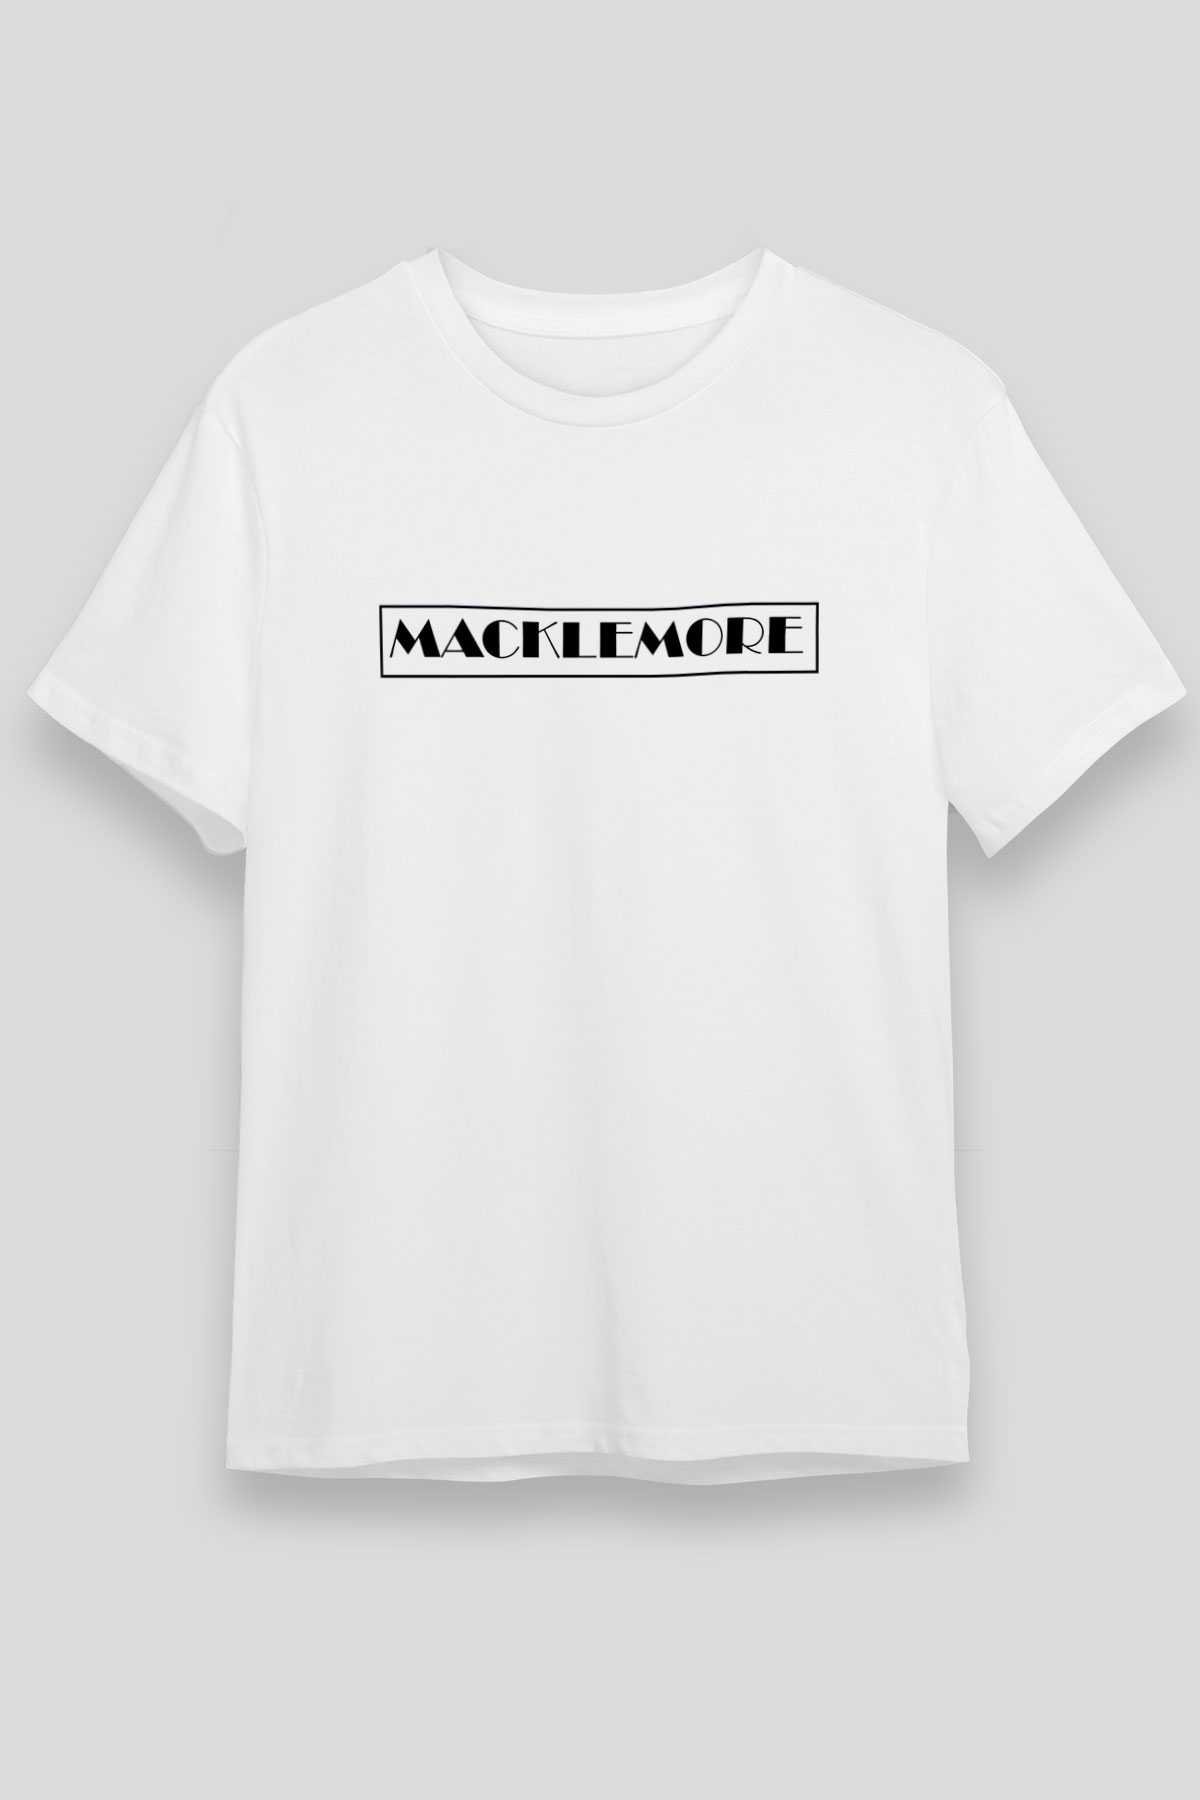 Macklemore T shirt,Hip Hop,Rap Tshirt 03